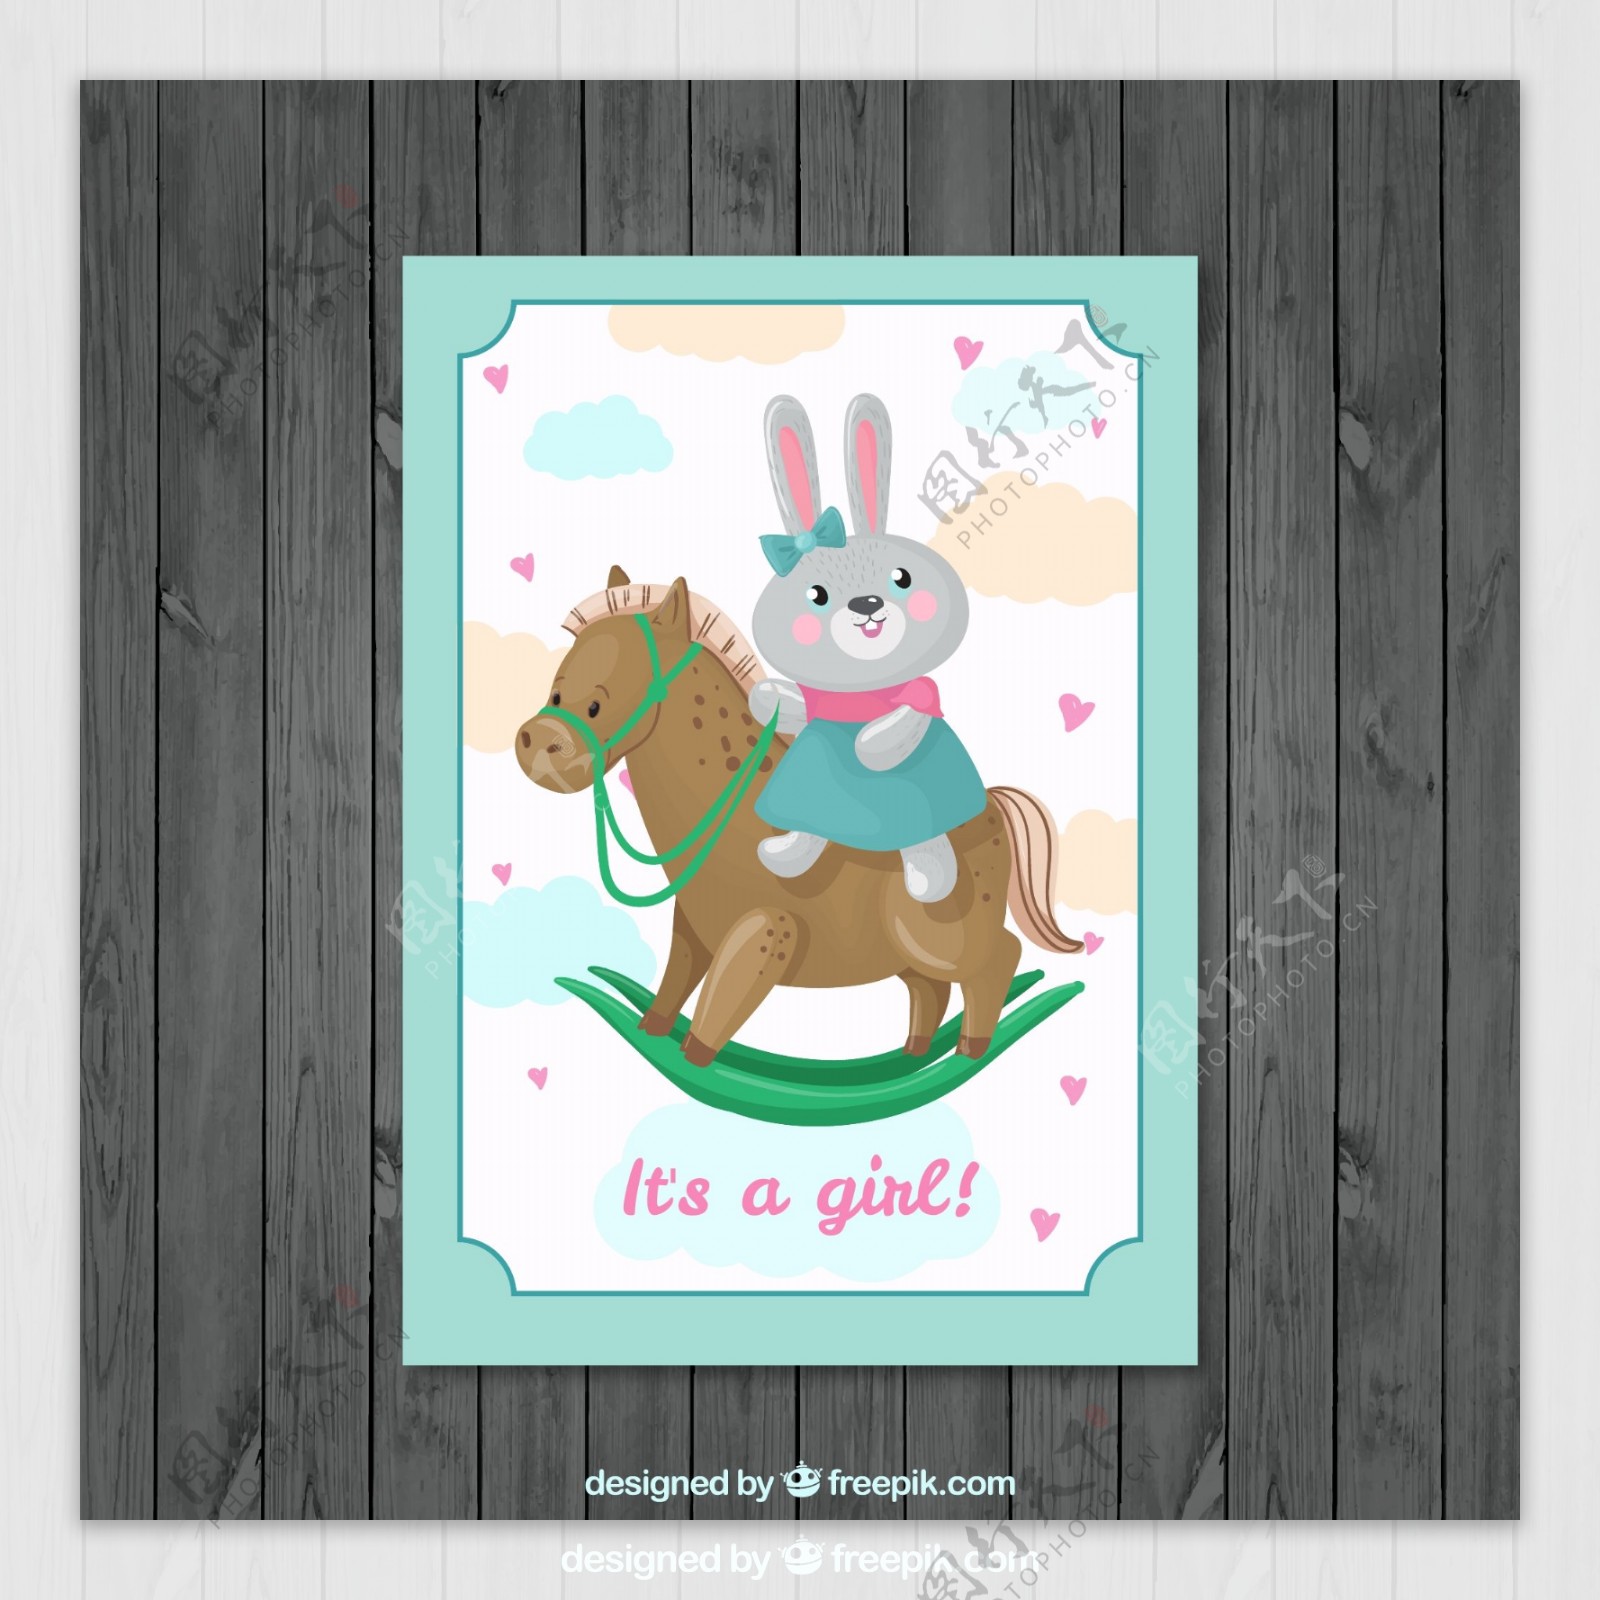 可爱骑木马的兔子迎婴贺卡矢量